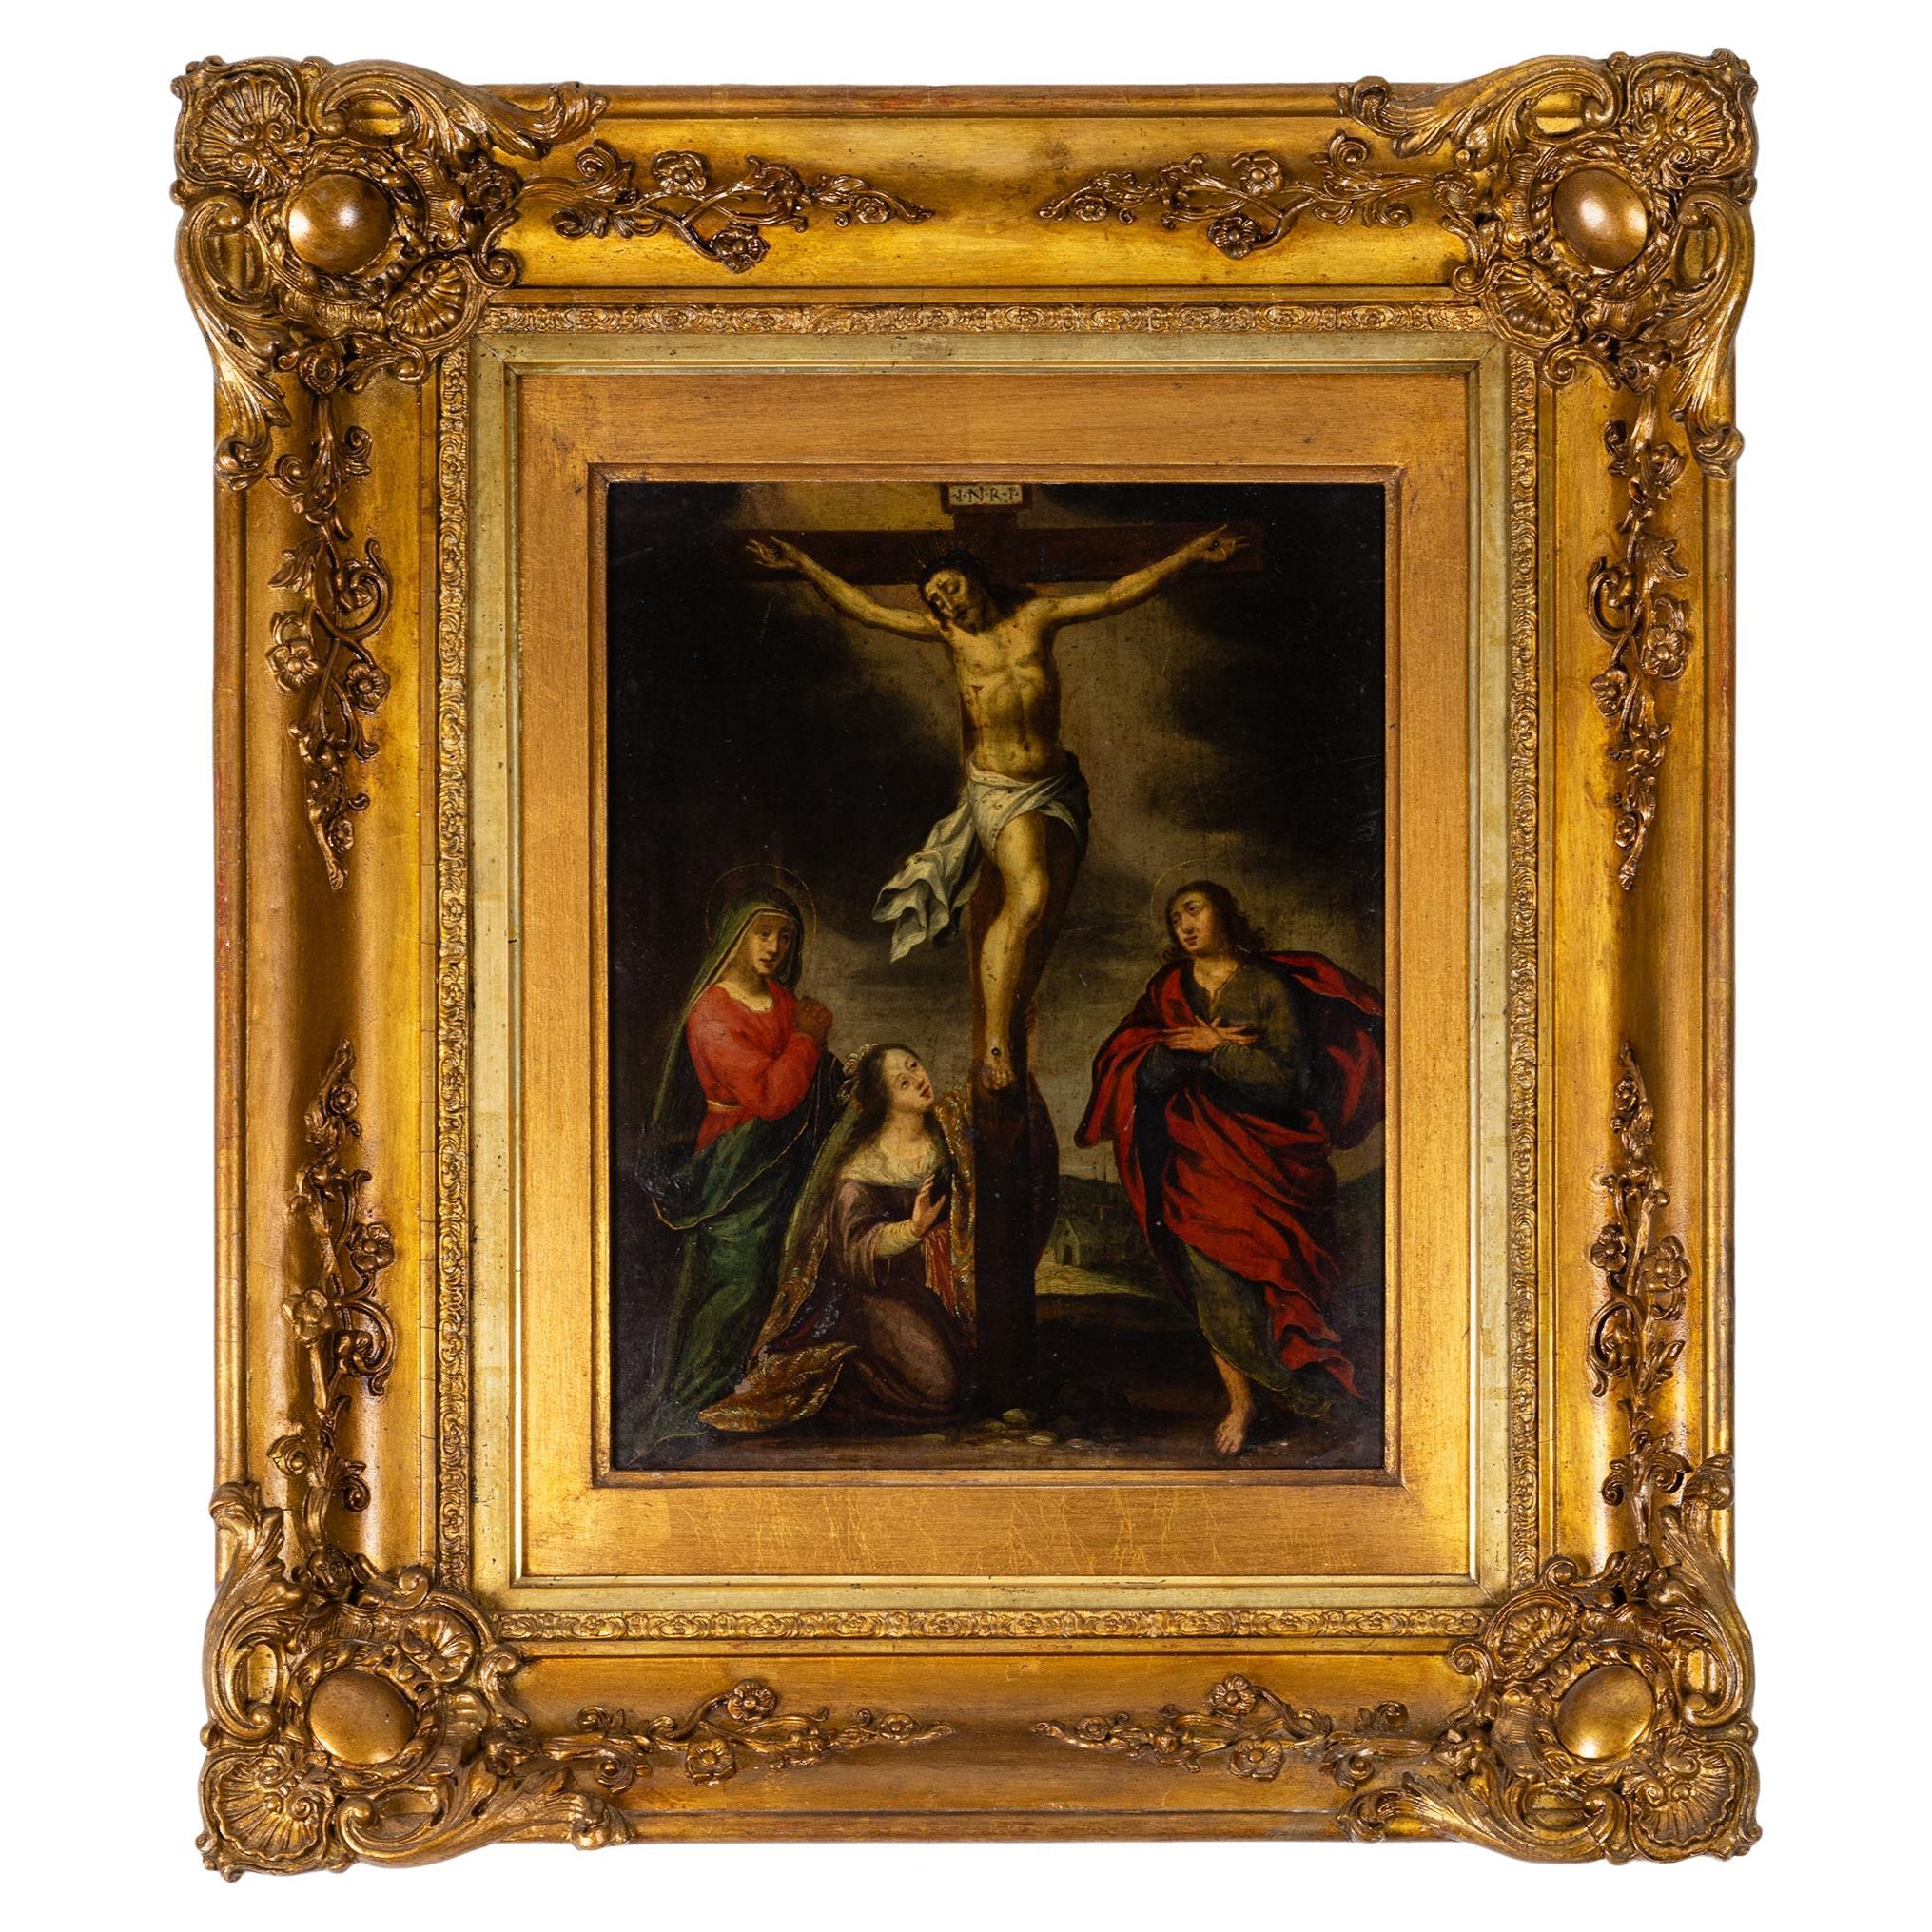 Barockes Gemälde der Kreuzigung Christi, 17. Jahrhundert – religiöse Kunst